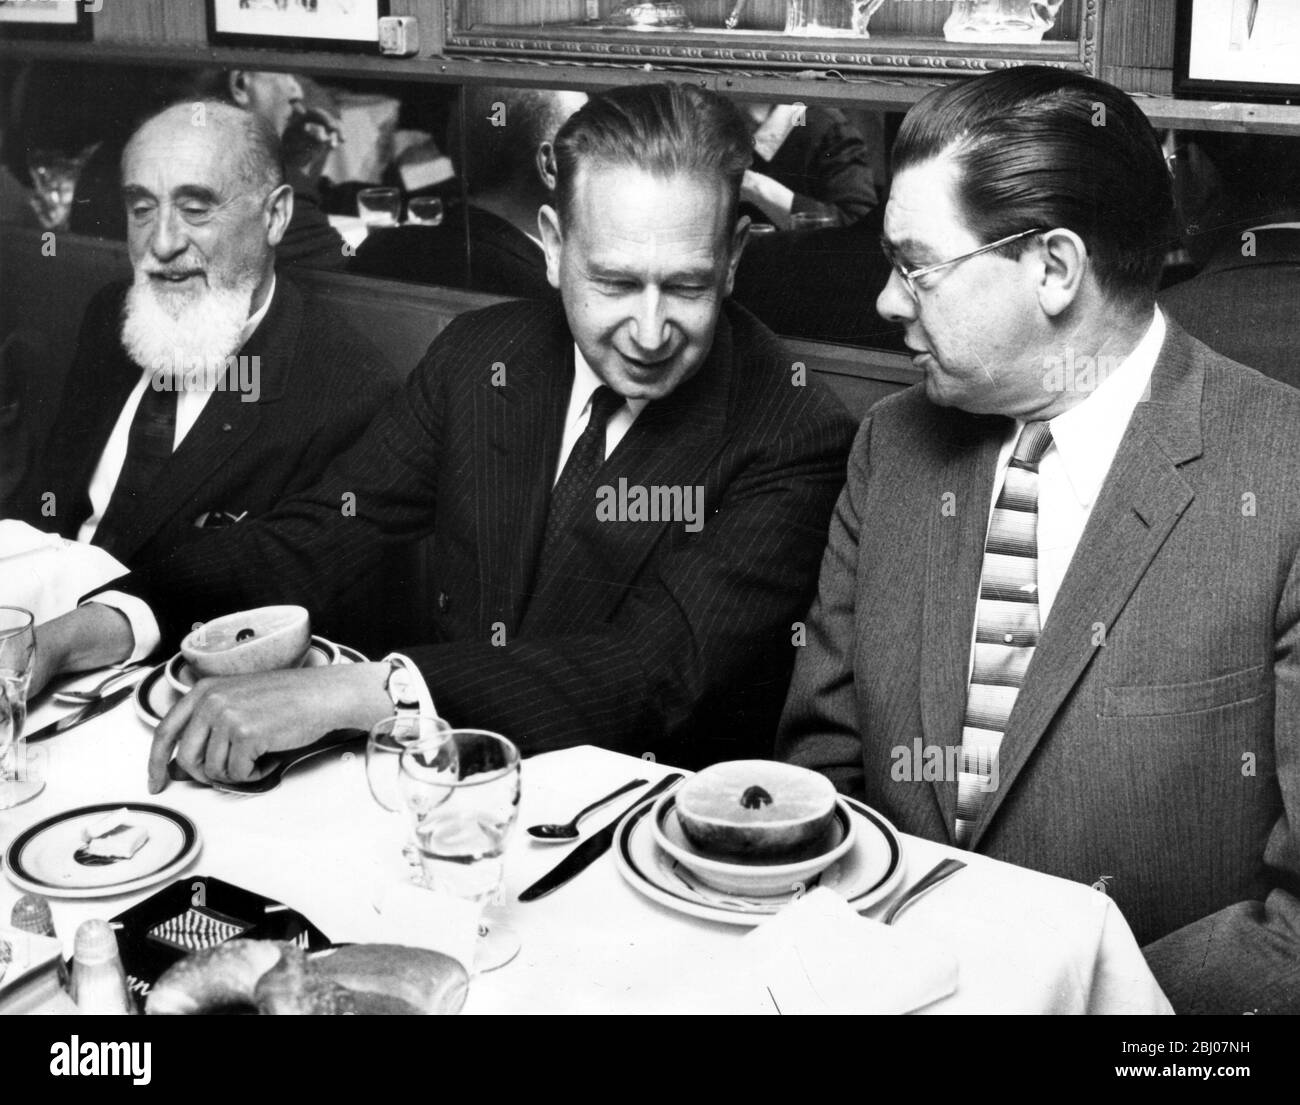 Le Secrétaire général des Nations Unies, Dah Hammarskjold (centre), discute avec le correspondant de la presse des Nations Unies, Bruce Munn (à droite), lors du déjeuner au restaurant Danny's Hideaway. L'homme barbu sur la gauche est Arnold Van Dias. - 9 avril 1958 Banque D'Images